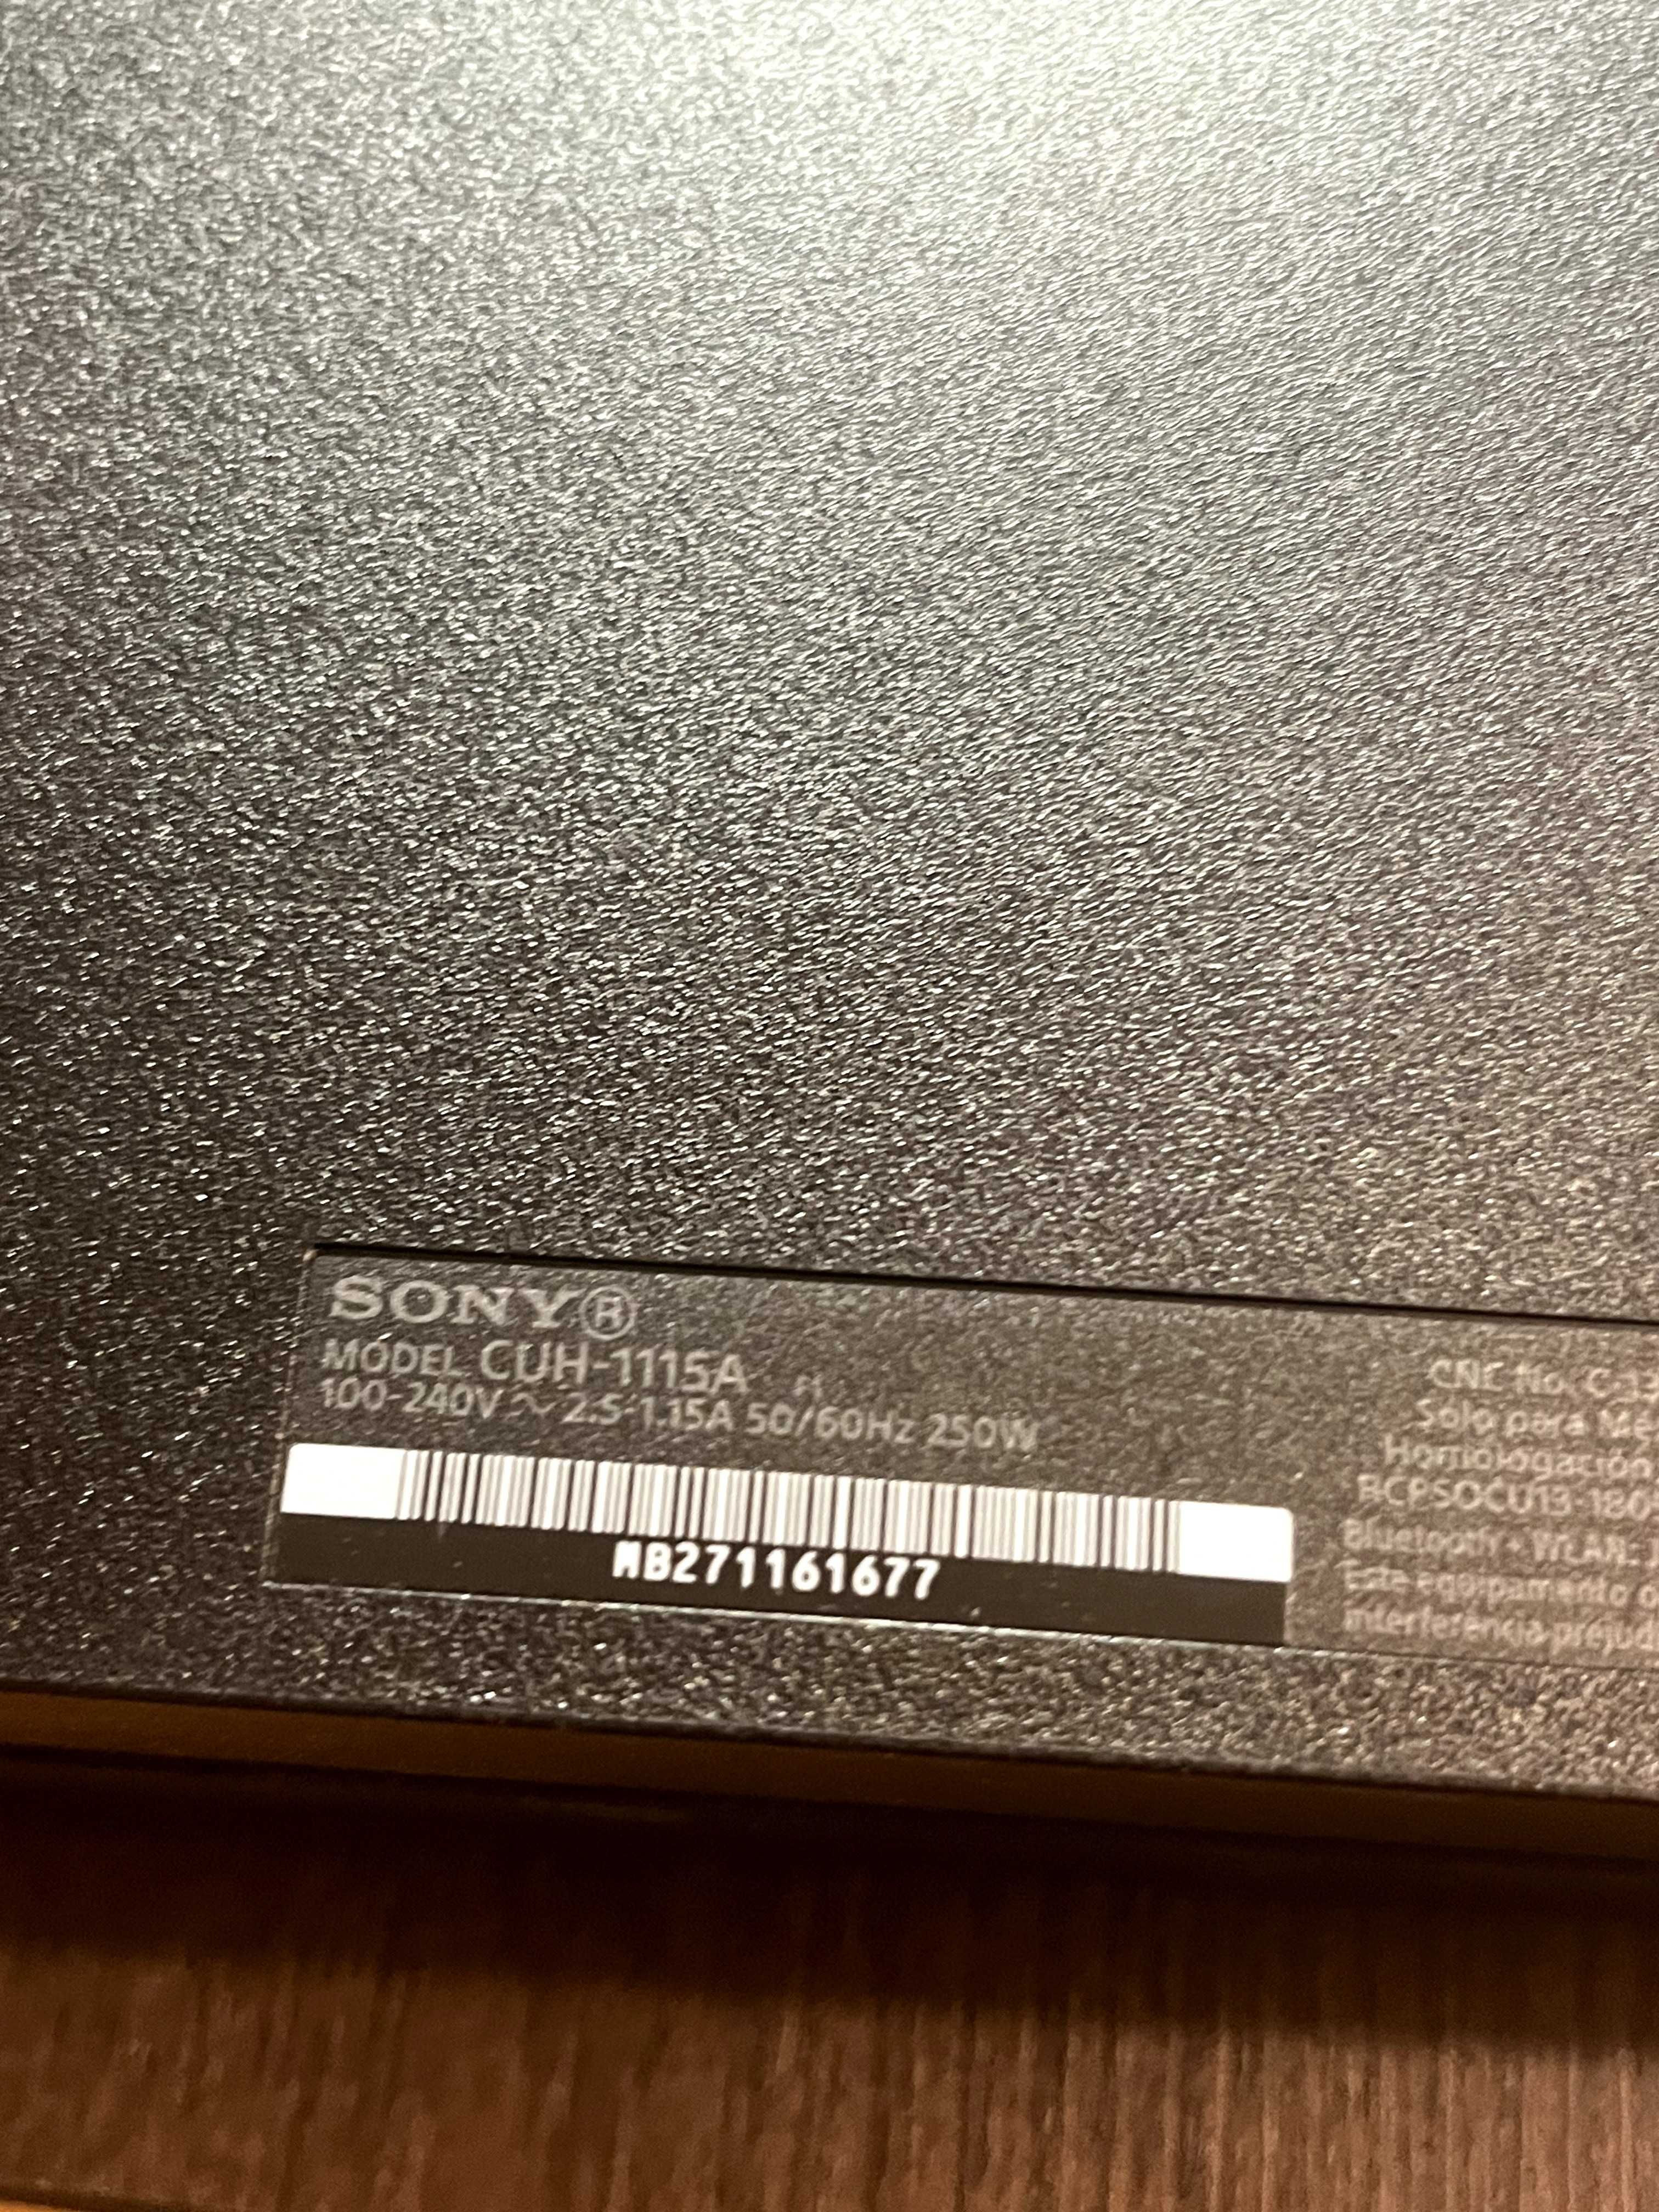 Sony Playstation 4 500GB, CUH-1115A